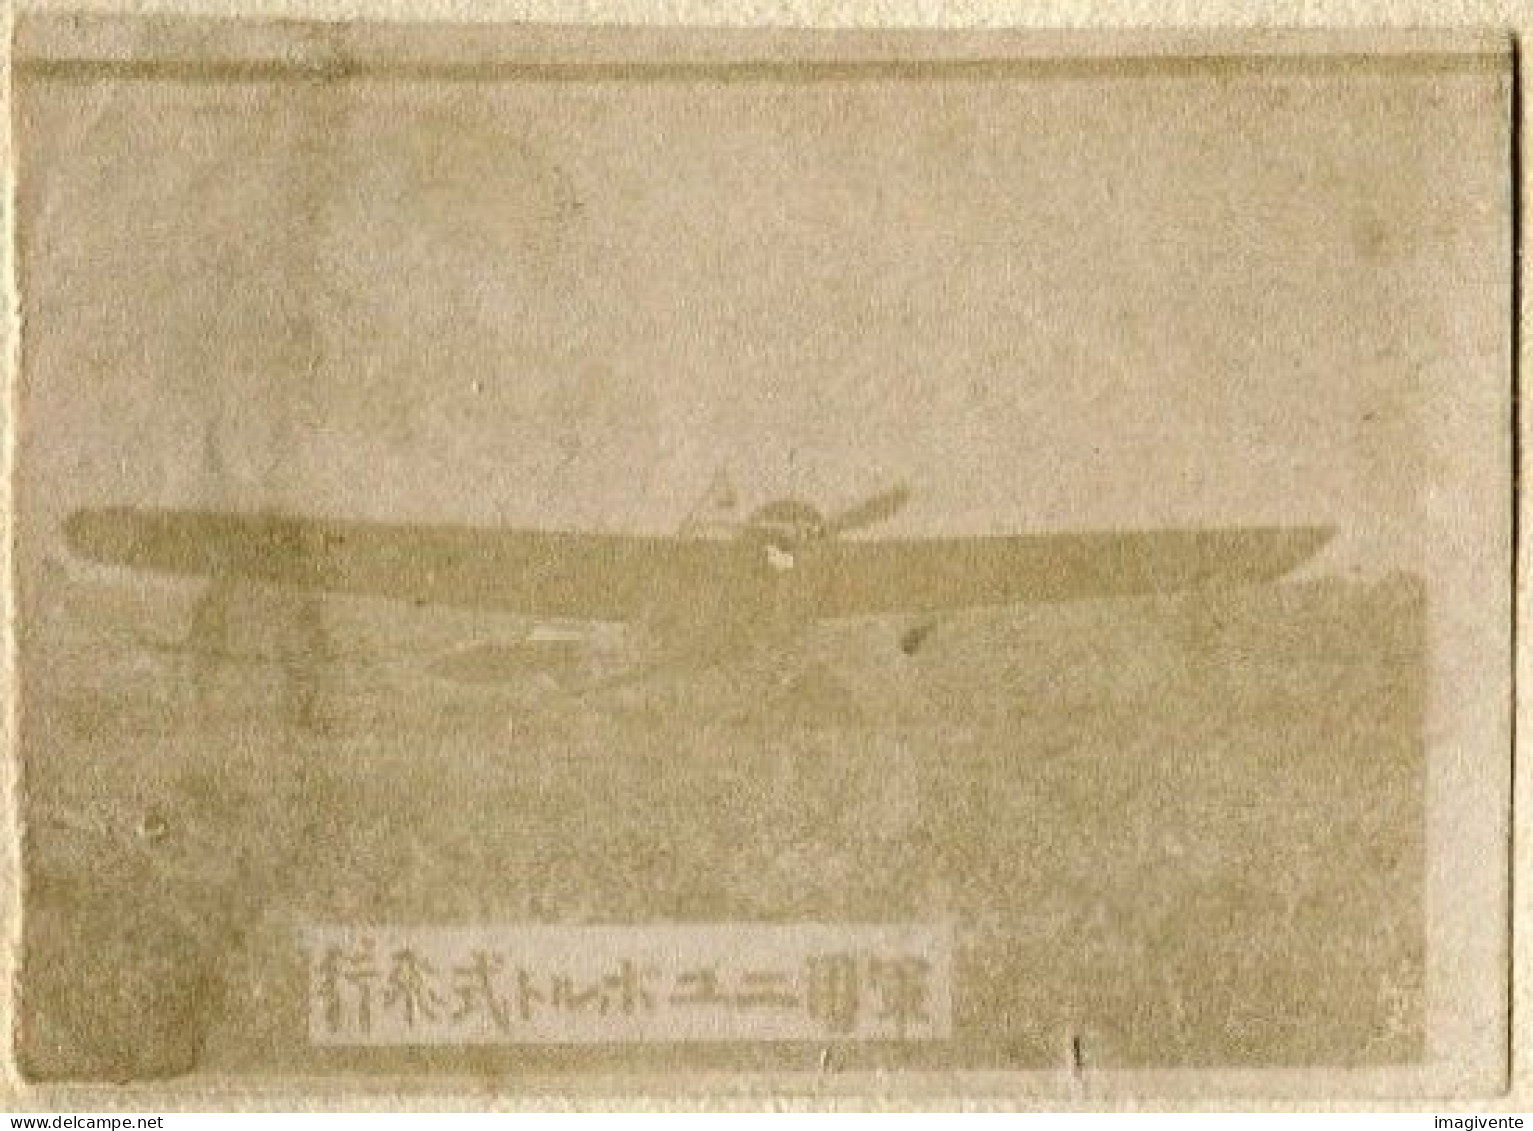 Lot de 60 photos JAPON Train Locomotive Avion biplans divers